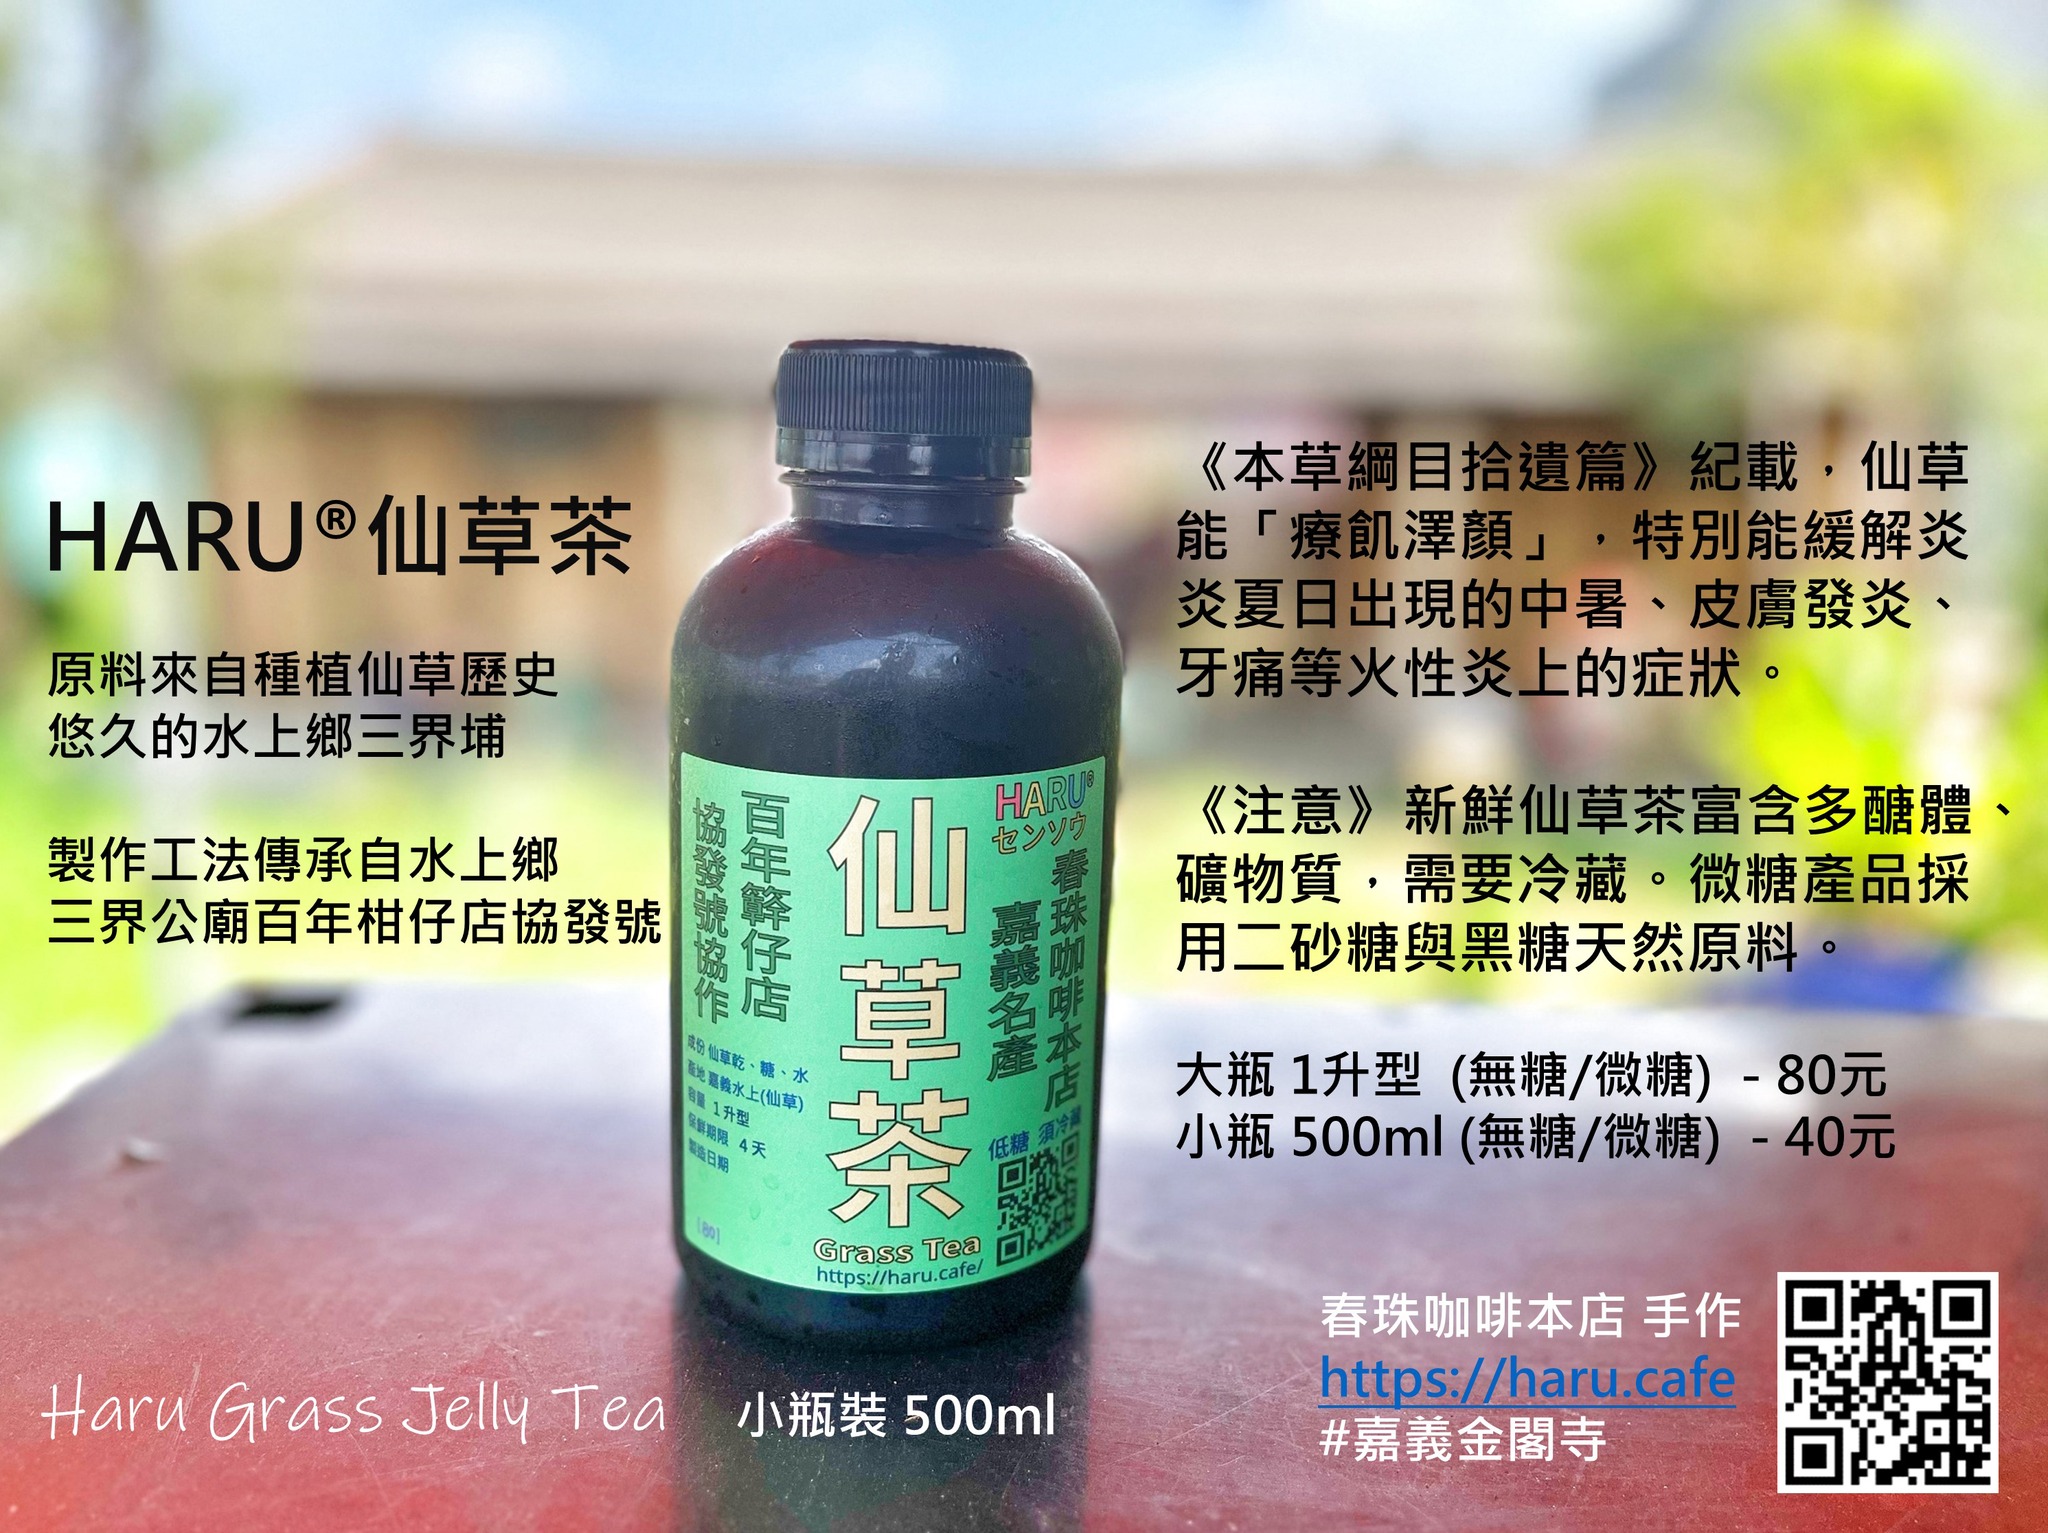 Haru仙草茶生產與製作傳承自水上鄉三界公廟口百年柑仔店協發號，混用多年儲存仙草乾製成。